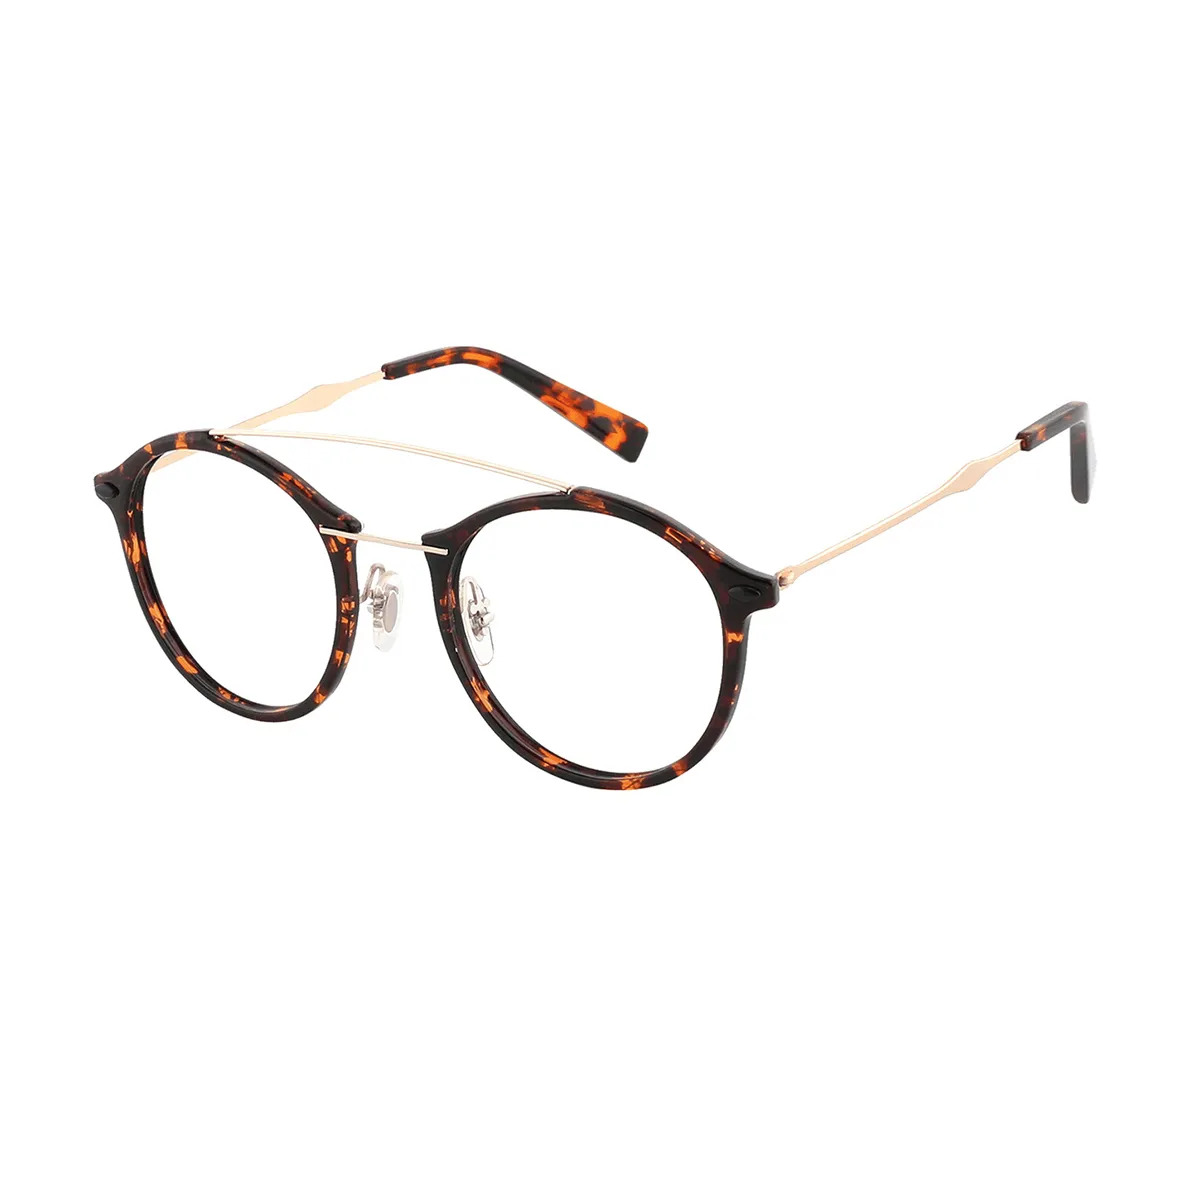 Antrobus - Round Tortoiseshell Glasses for Men & Women - EFE